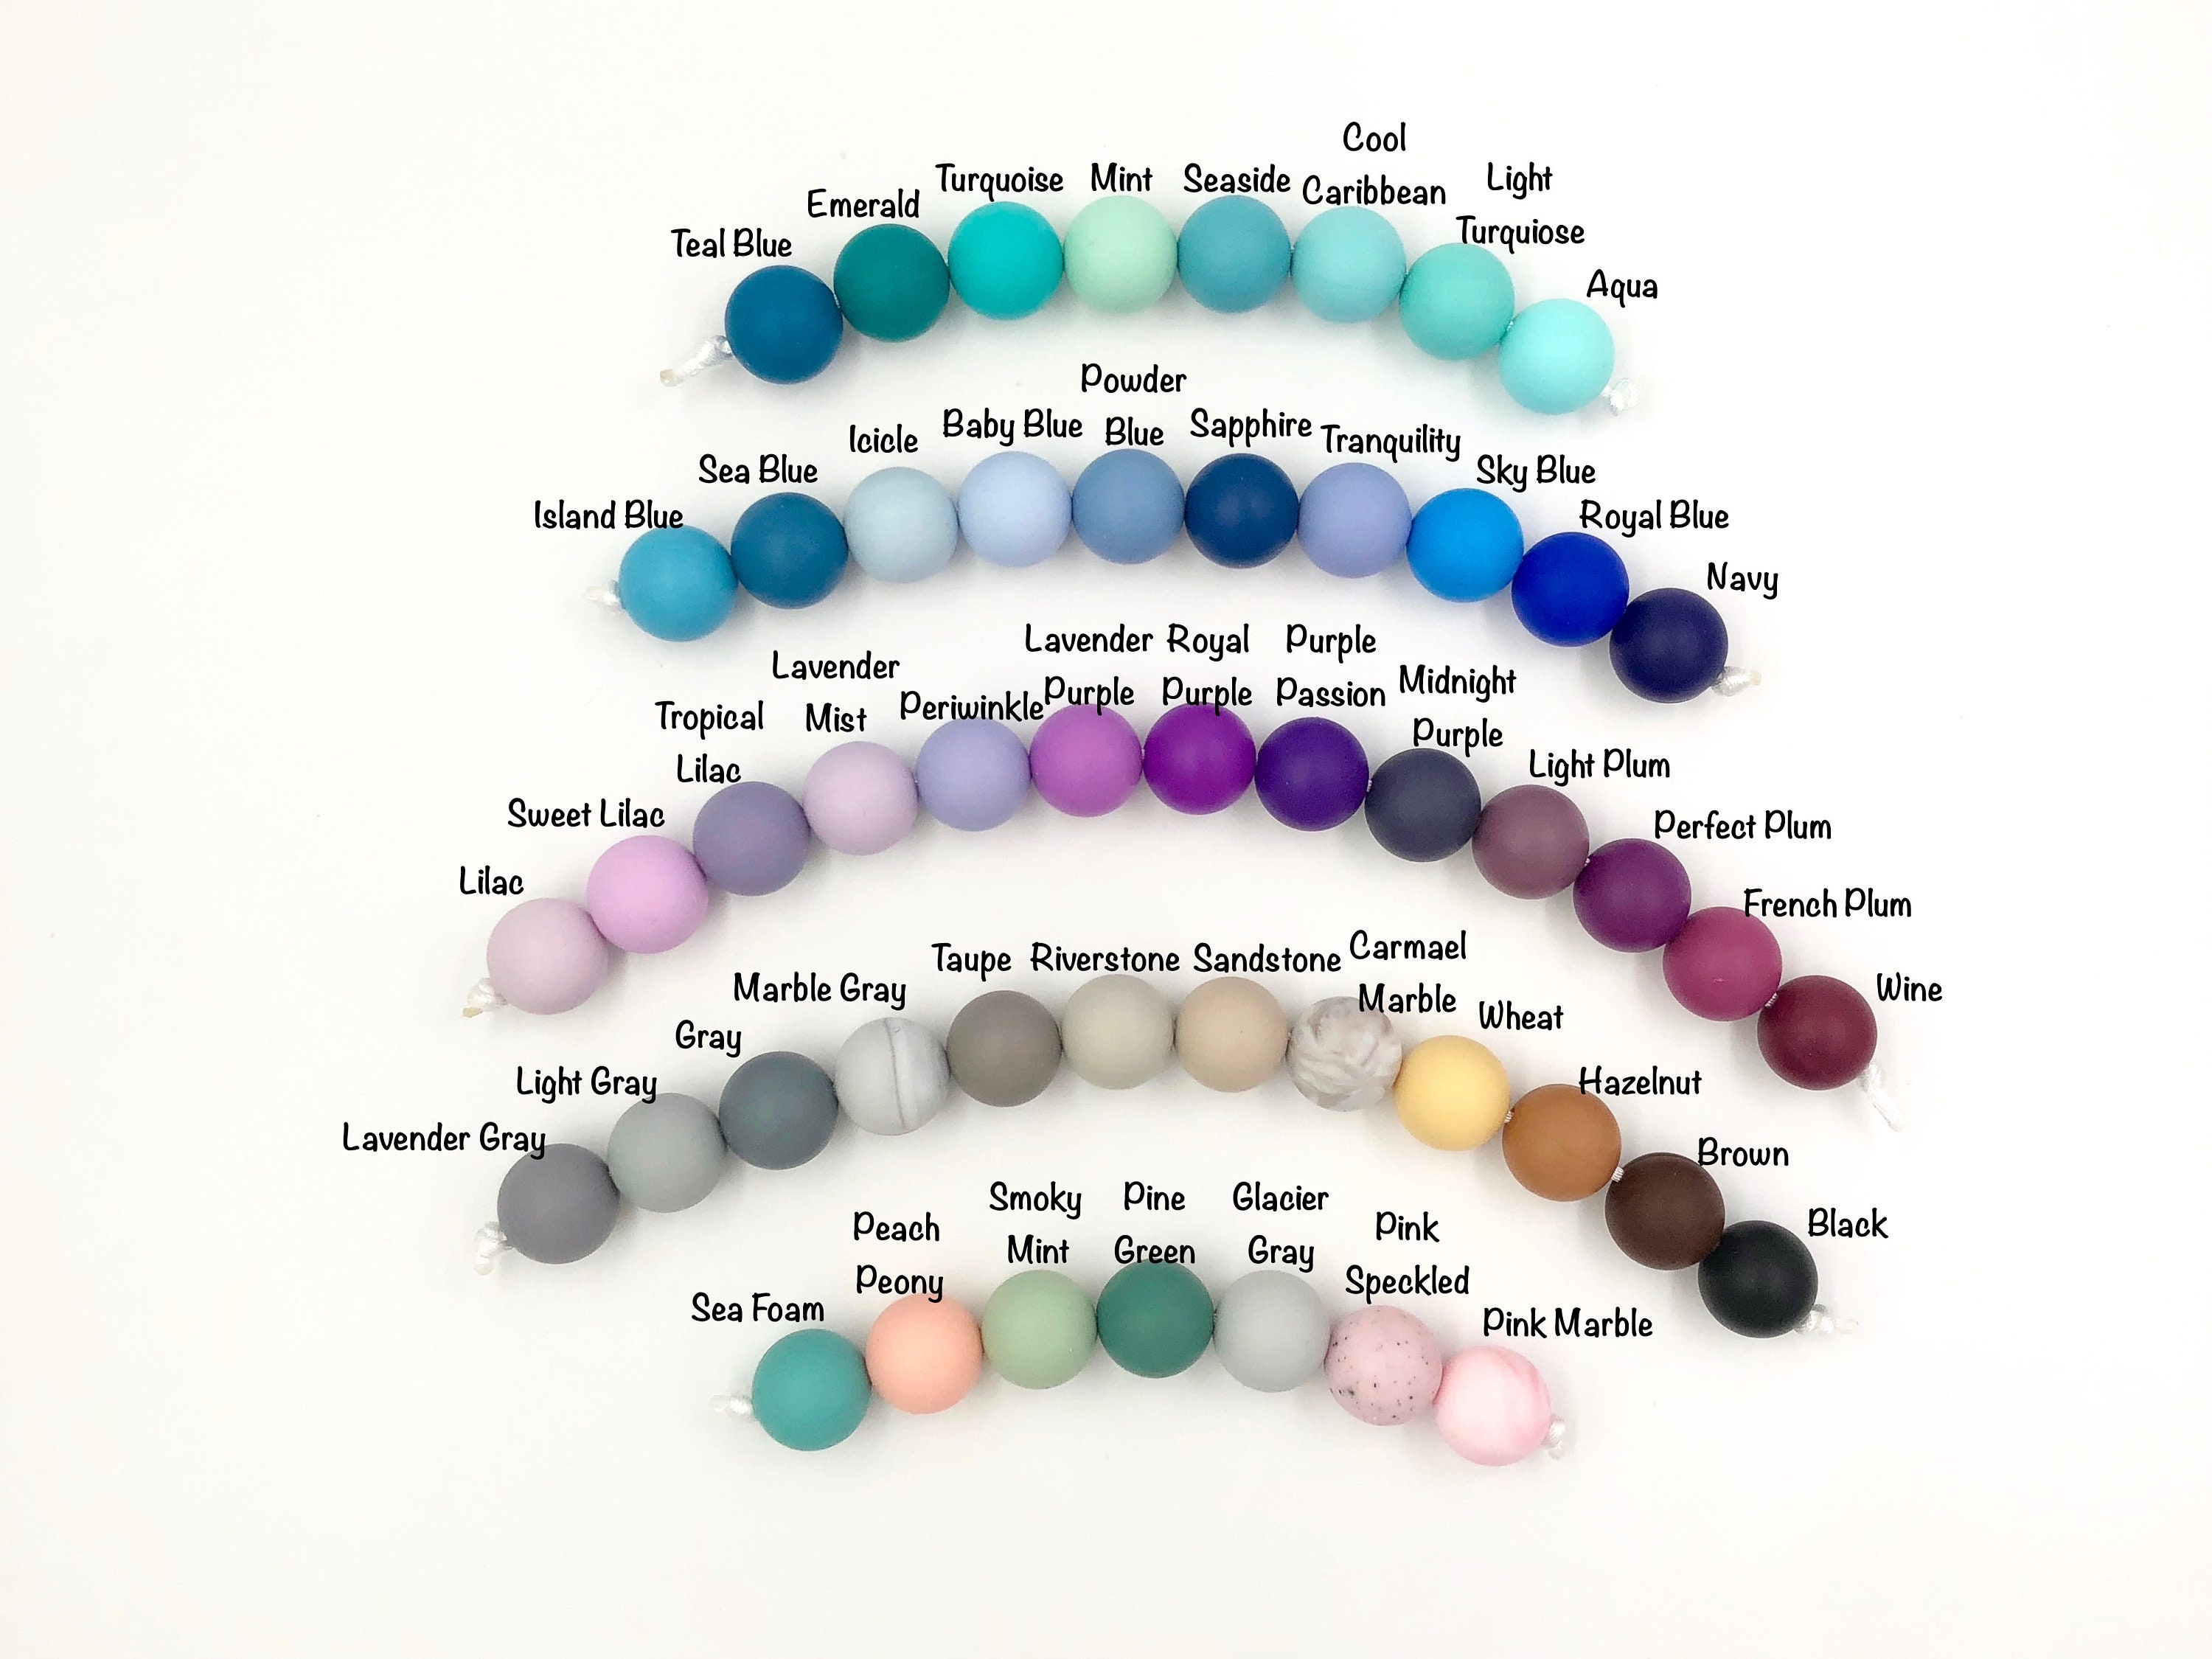 BULK 15mm Printed Silicone Beads--Grab Bag! – USA Silicone Bead Supply  Princess Bead Supply